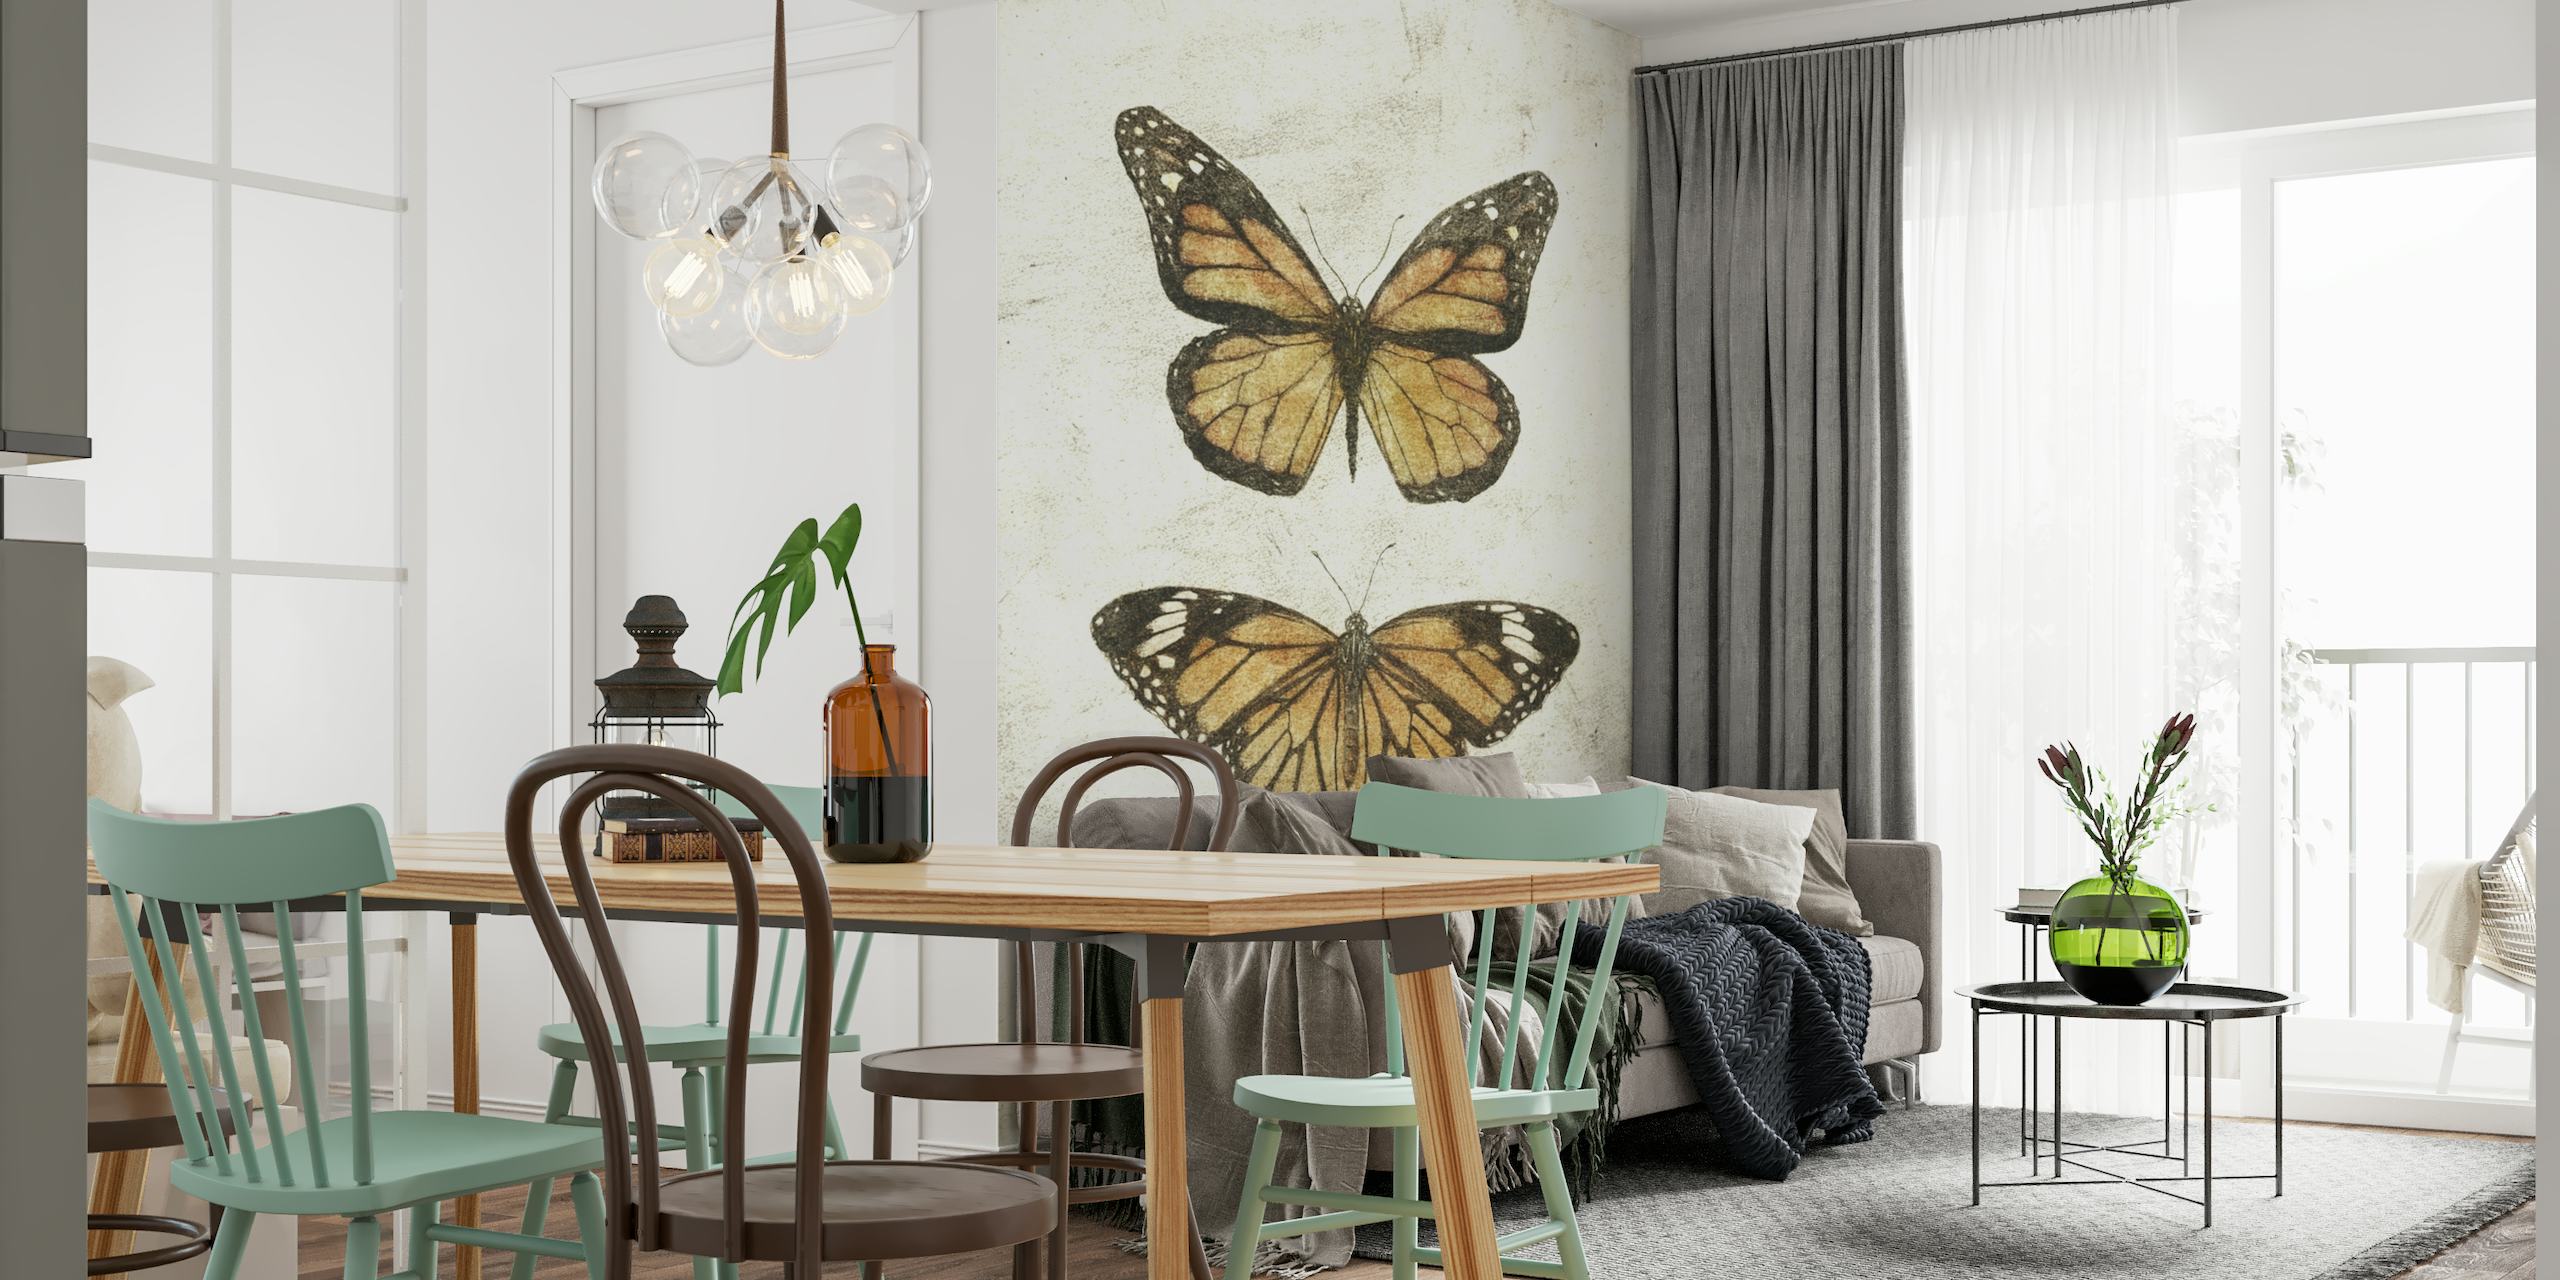 Wandbild Butterflies II mit zwei Schmetterlingen im Vintage-Stil auf einem natürlich strukturierten Hintergrund